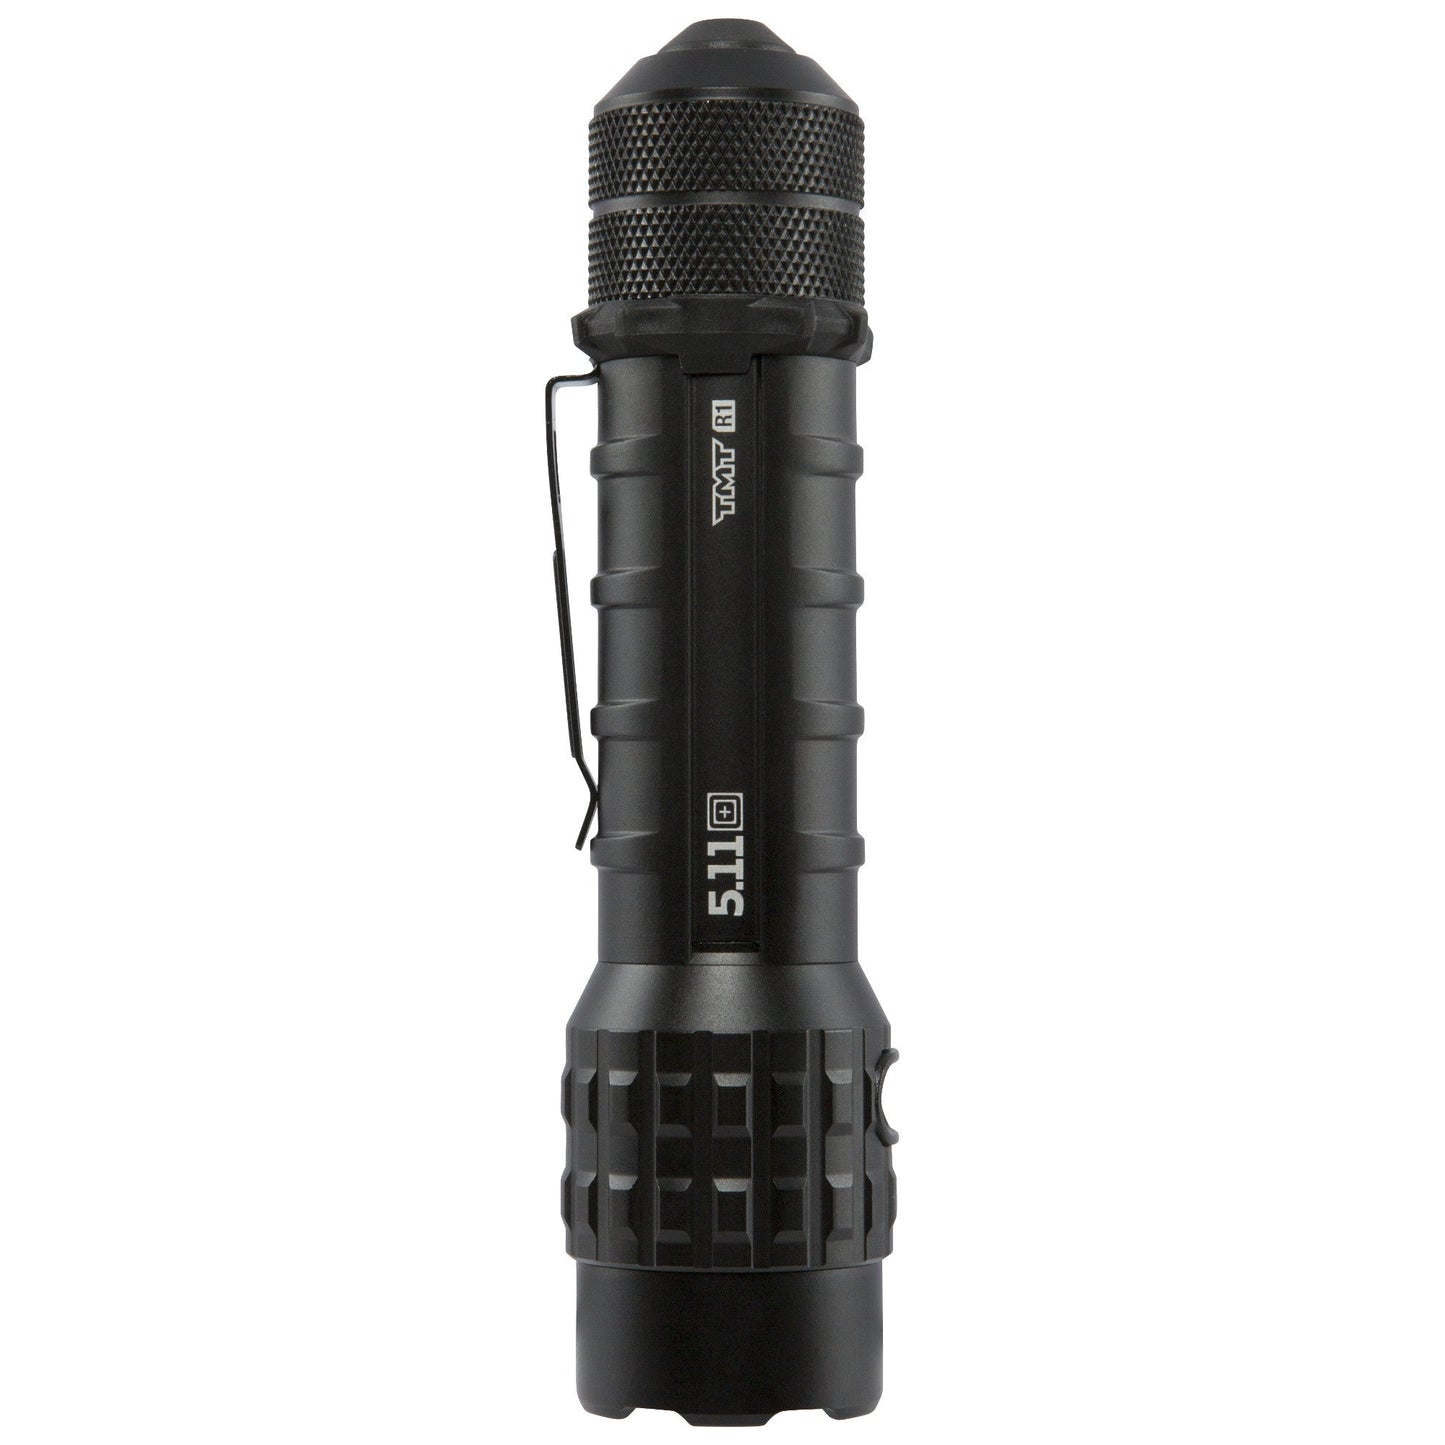 5.11 Tactical TMT R1 339-Lumens Duty Flashlight Tactical Distributors Ltd New Zealand